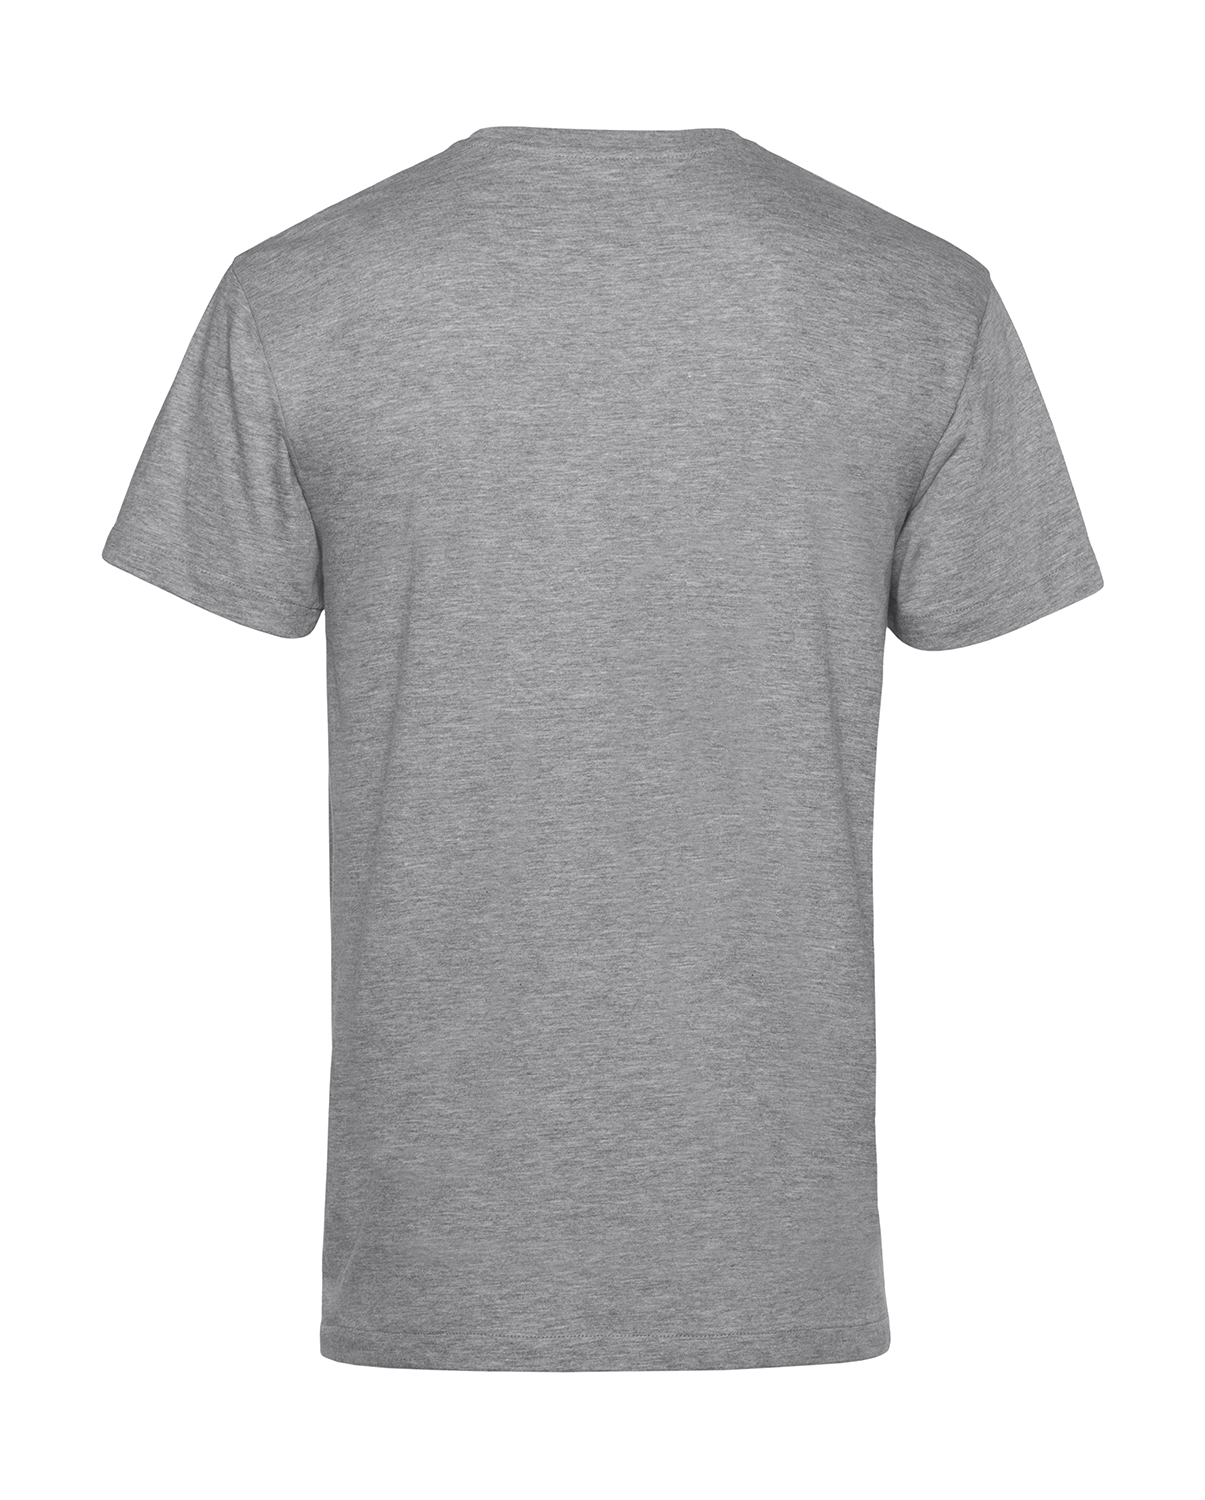 Nachhaltiges T-Shirt Herren 2Takt - Wenn Du keine besitzt SR2